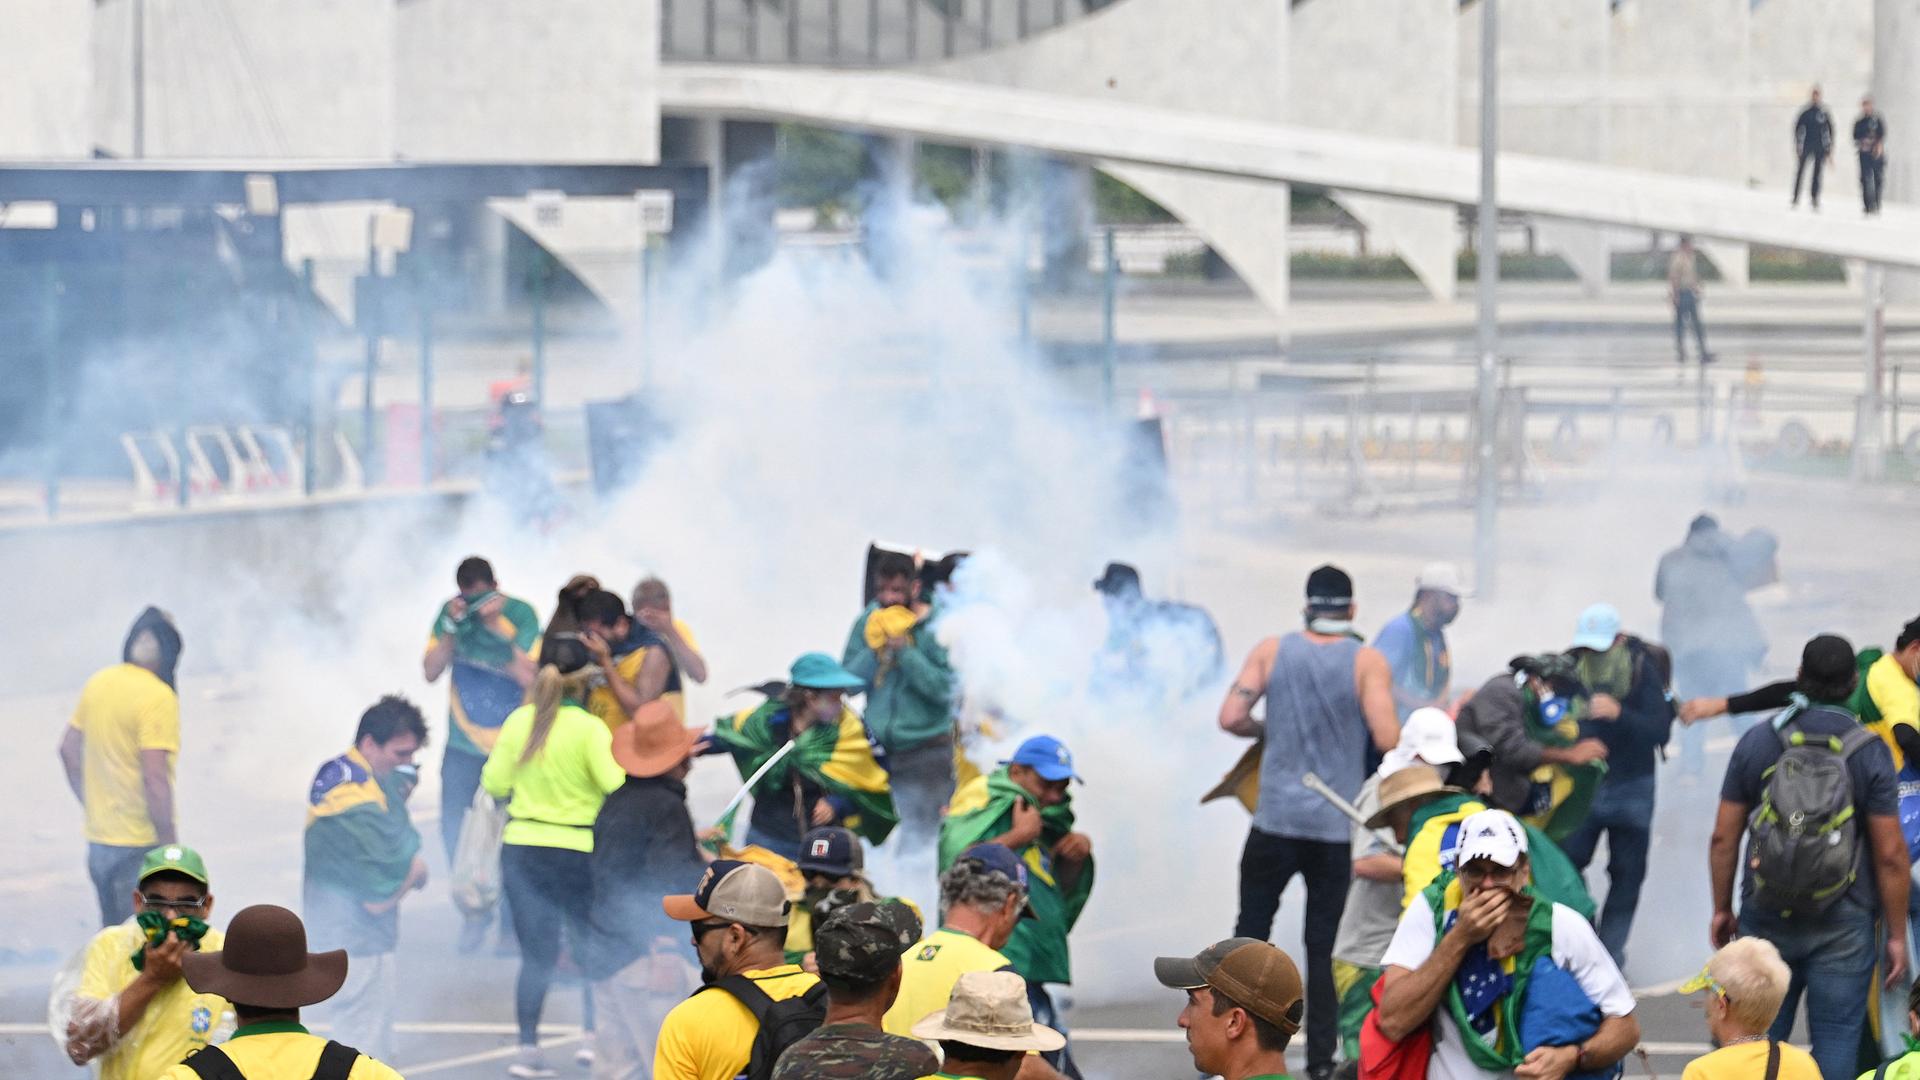 Randalierende Anhänger des früheren Präsidenten Jair Bolsonaro vor dem Kongressgebäude in Brasilia